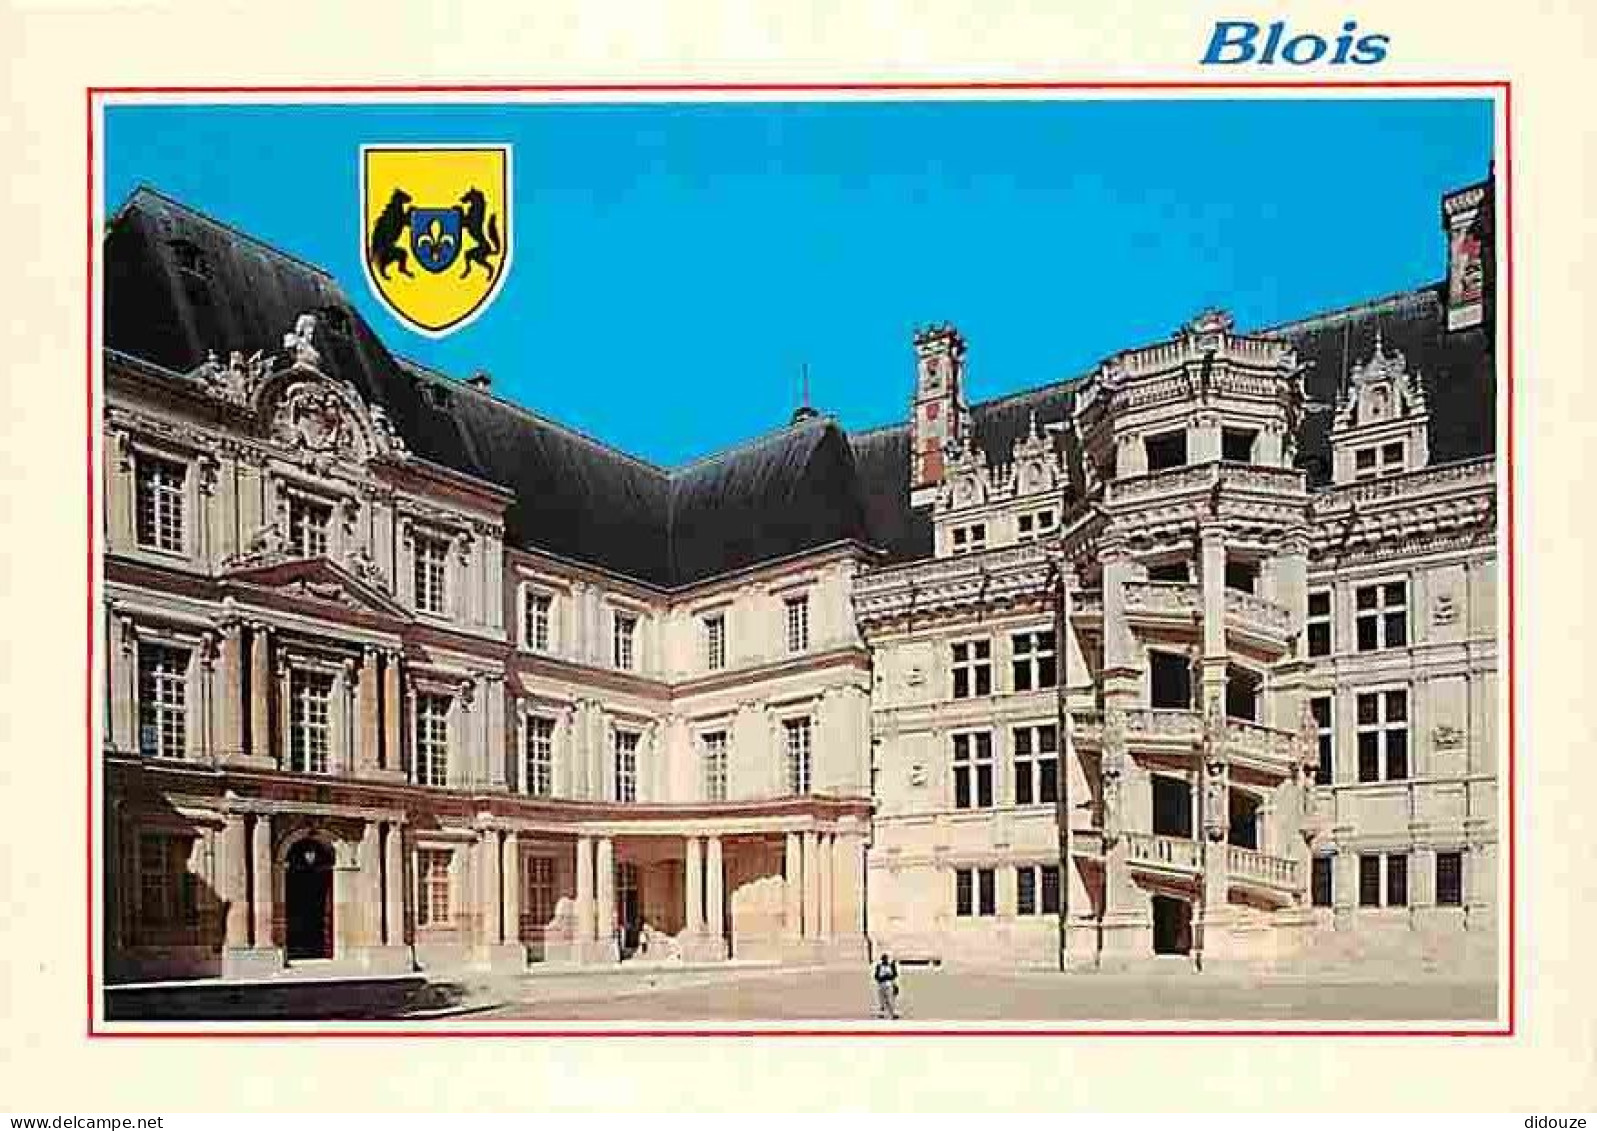 41 - Blois - Le Château - Aile Gaston D'Orléans Réalisée De 1635 à 1638 Par Mansart - Aile Et Escalier François 1er - Bl - Blois